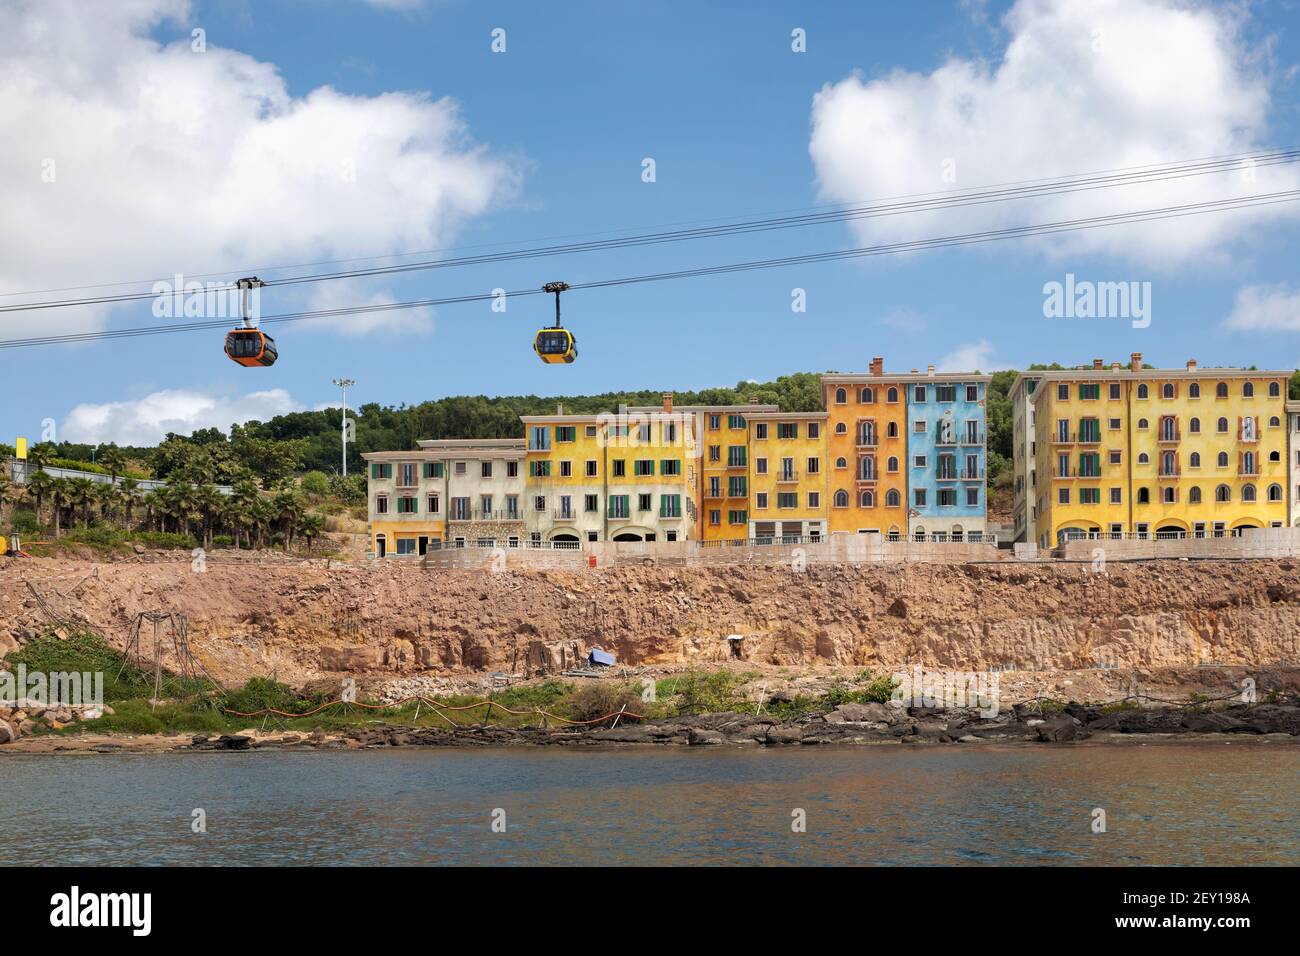 Bâtiments colorés avec téléphériques sur l'île de Phu Quoc, Vietnam Banque D'Images